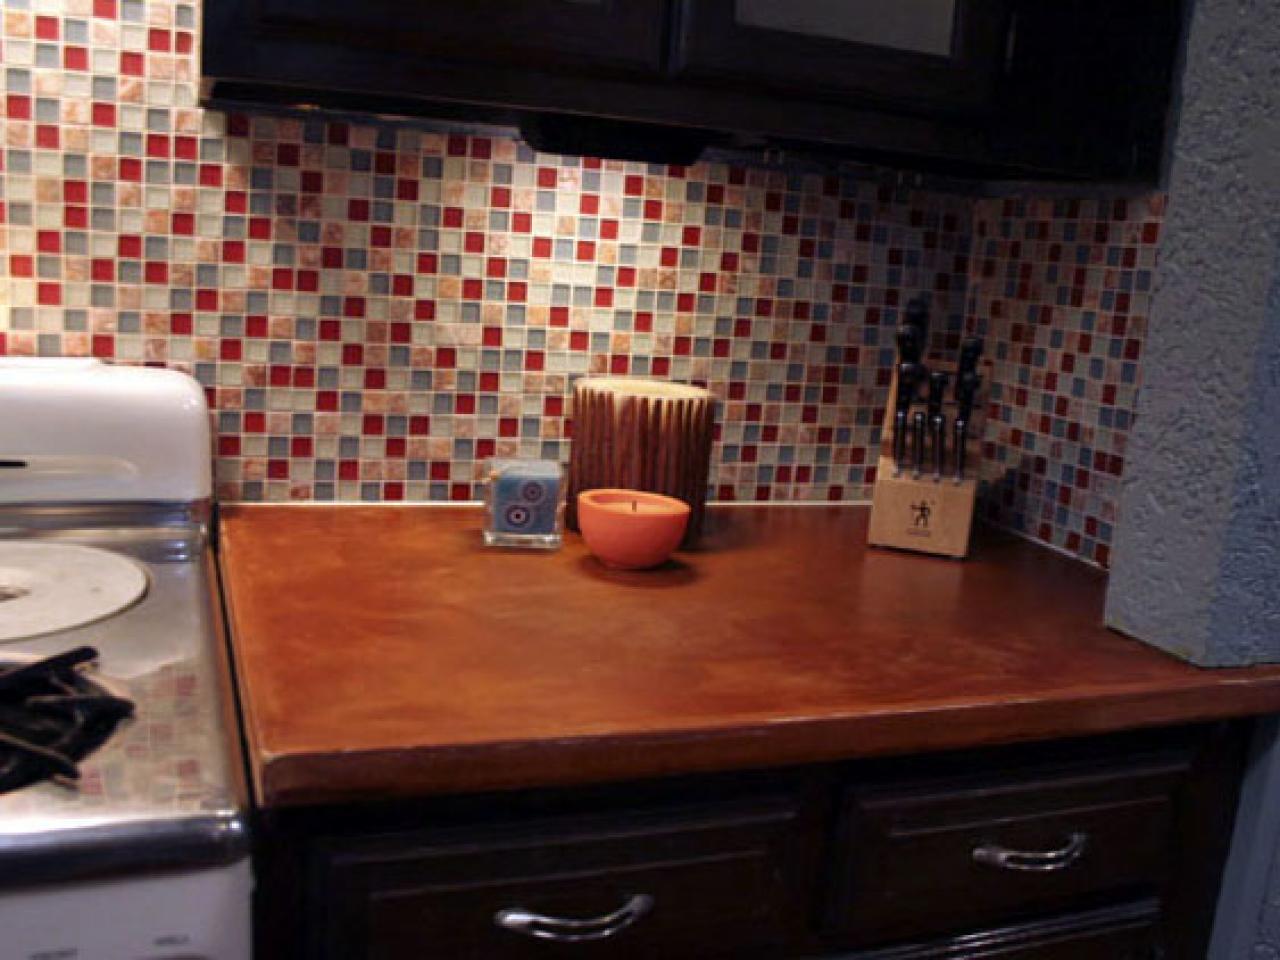 Tile Backsplash In Your Kitchen, Installing Wall Tile Backsplash